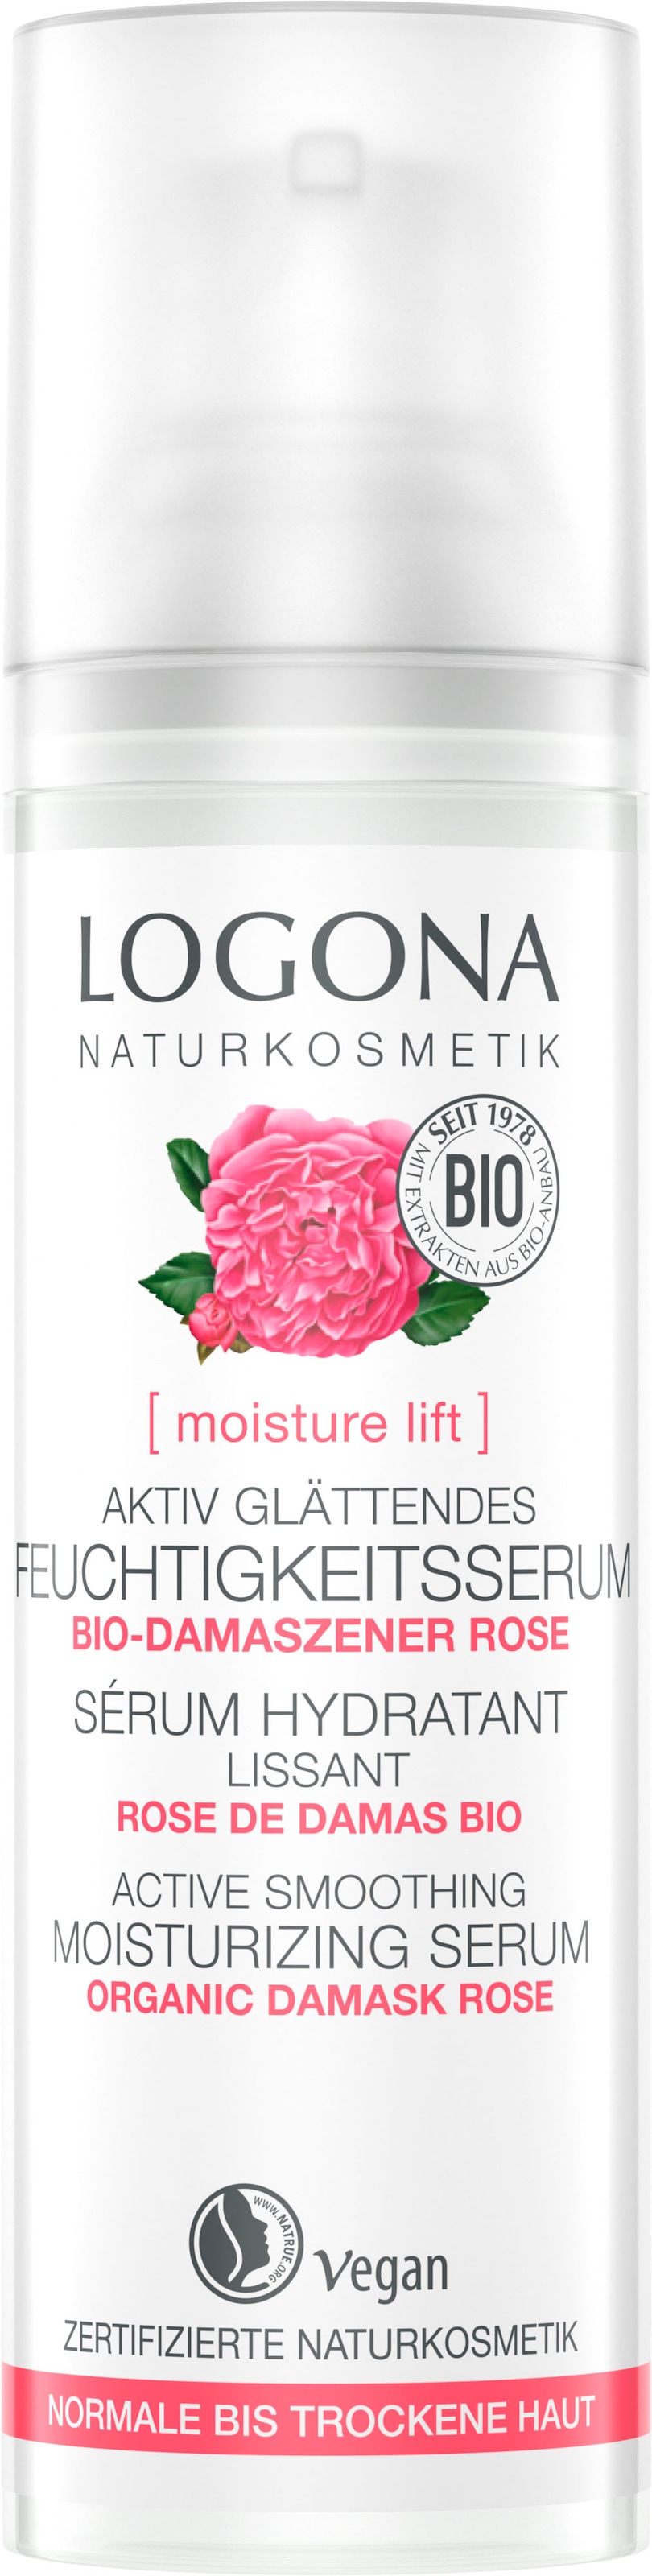 LOGONA Gesichtsserum »Logona moisture lift BAUR kaufen Feuchtigk.serum« glätt | online